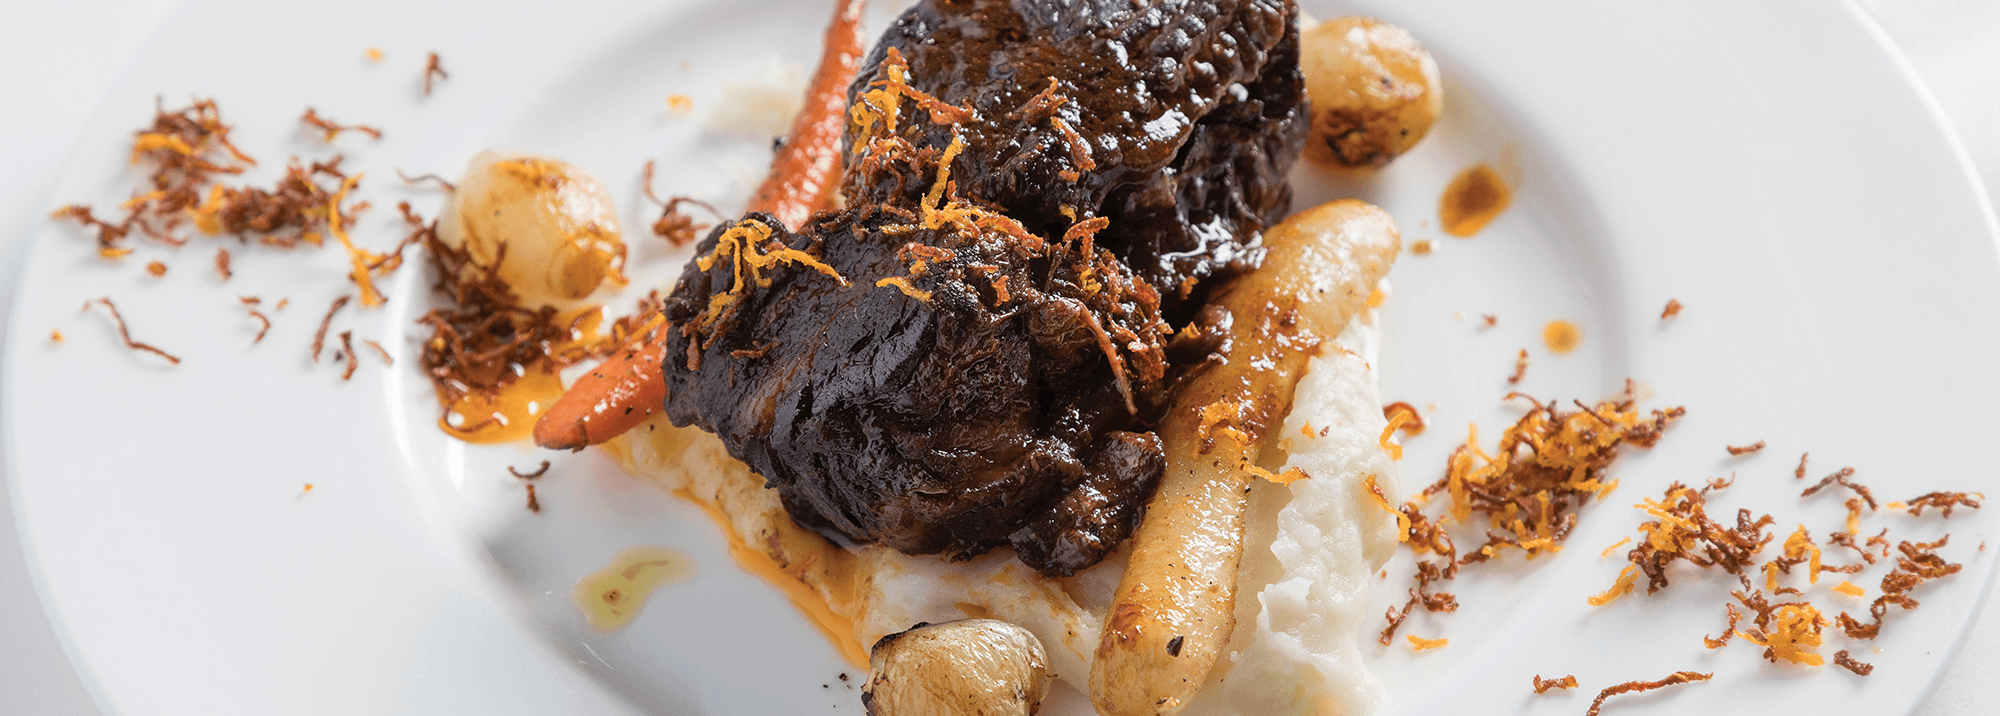 Posta negra cartagenera – IMUSA – La experta en cocina colombiana